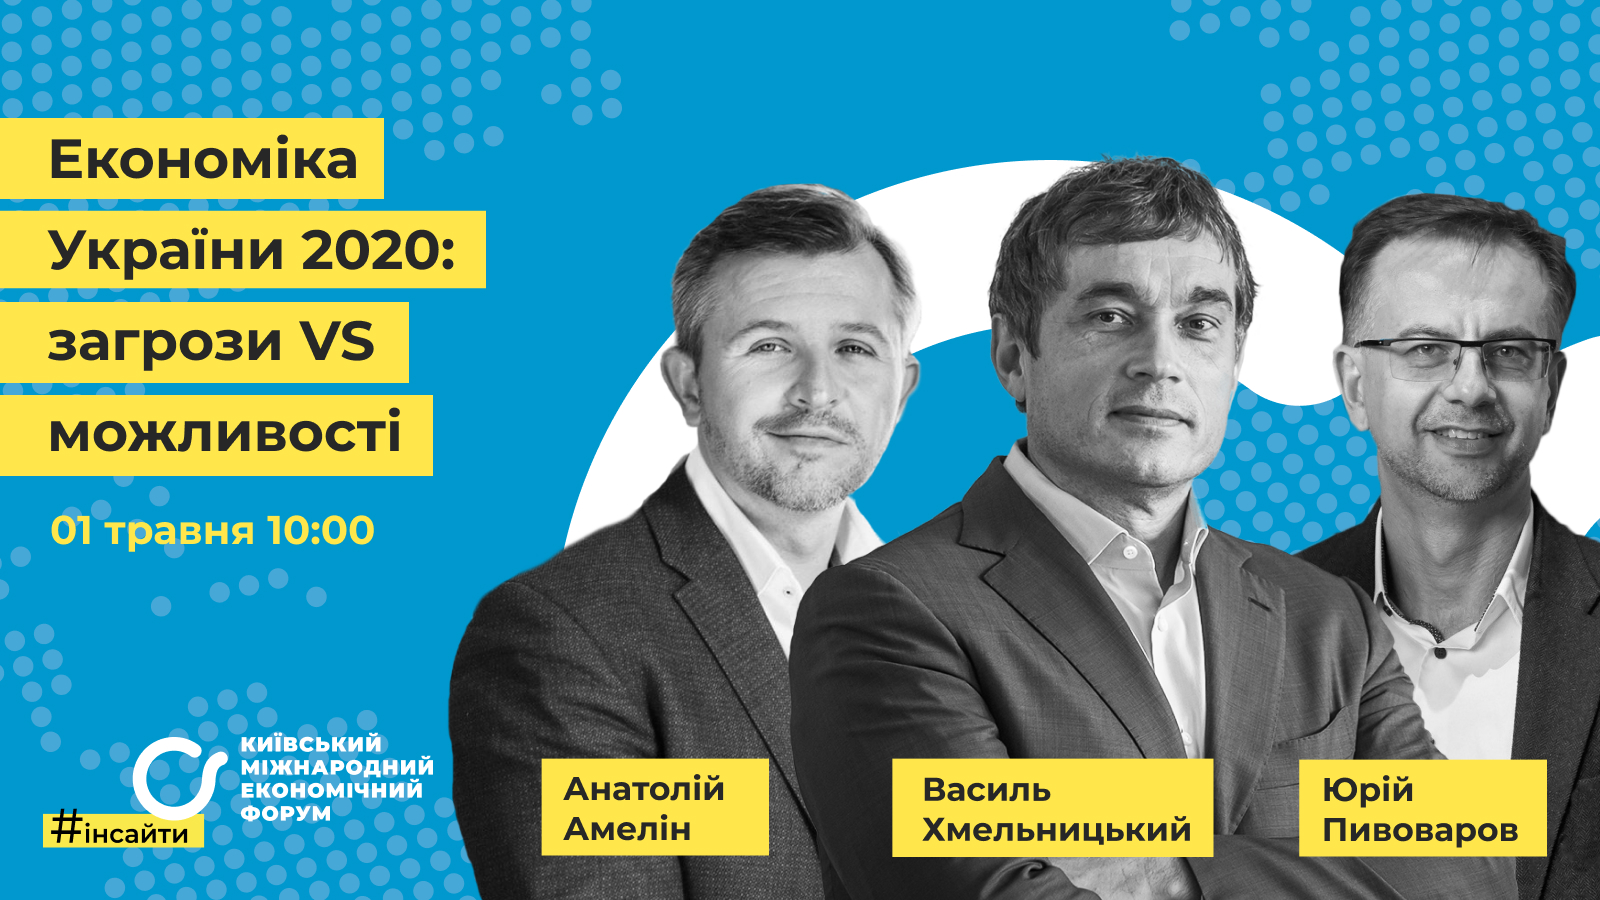 #инсайтыКМЭФ. Экономика Украины 2020: угрозы VS возможности